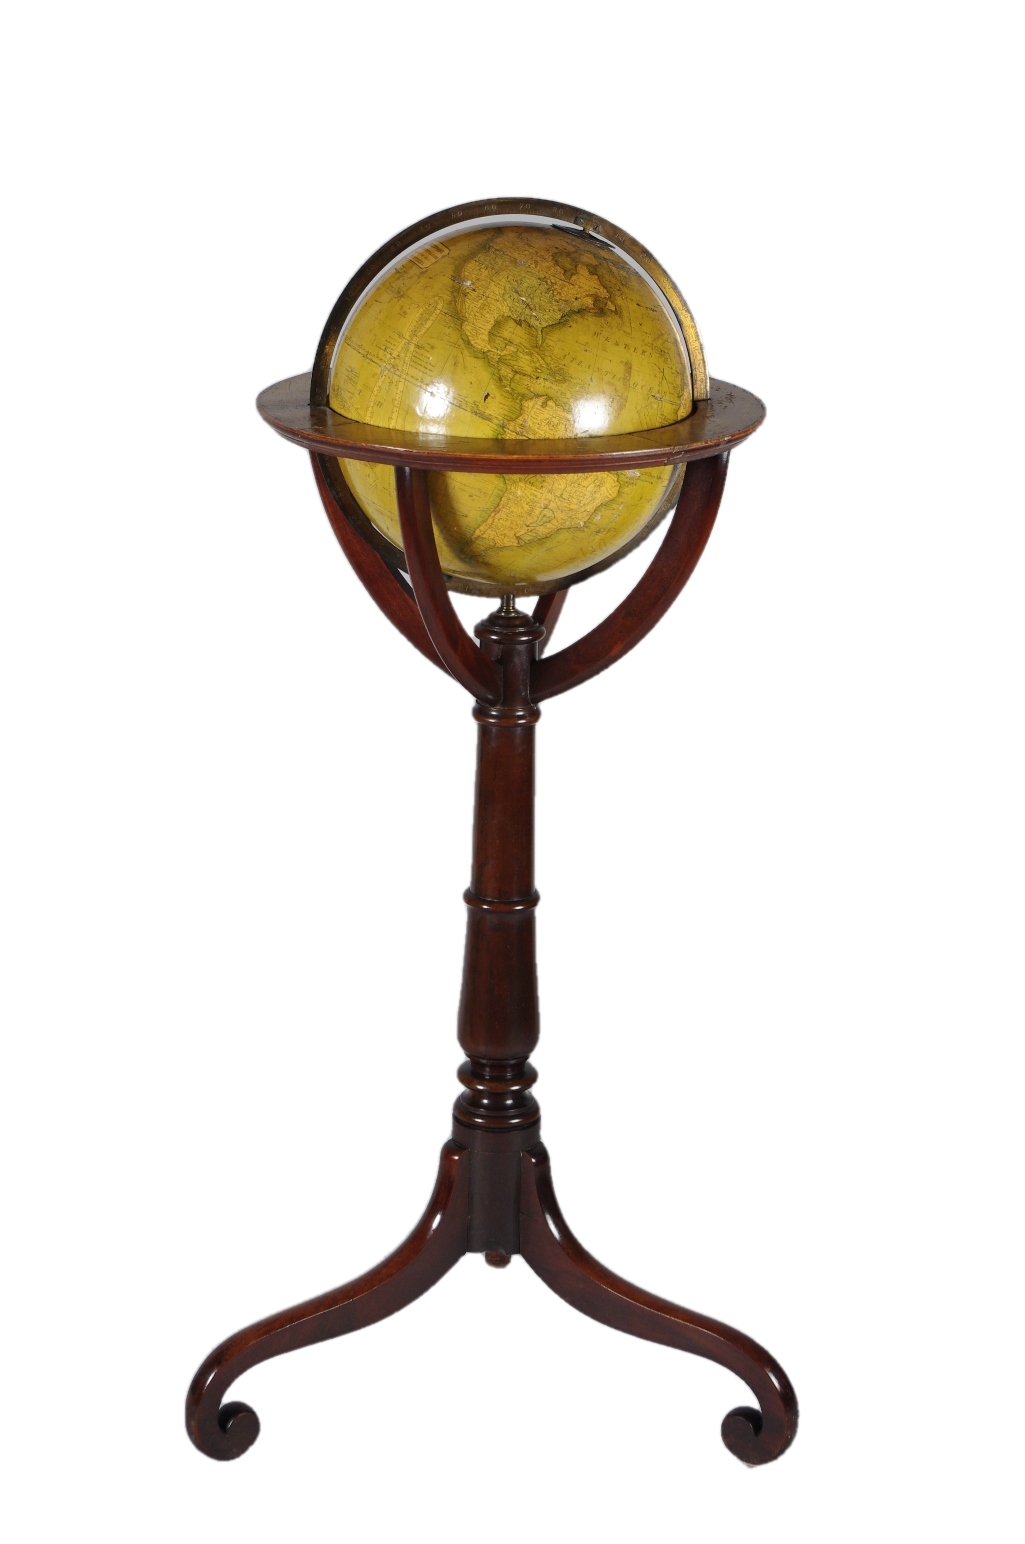 12" Terrestrial Globe by Kirkwood of Edinburgh